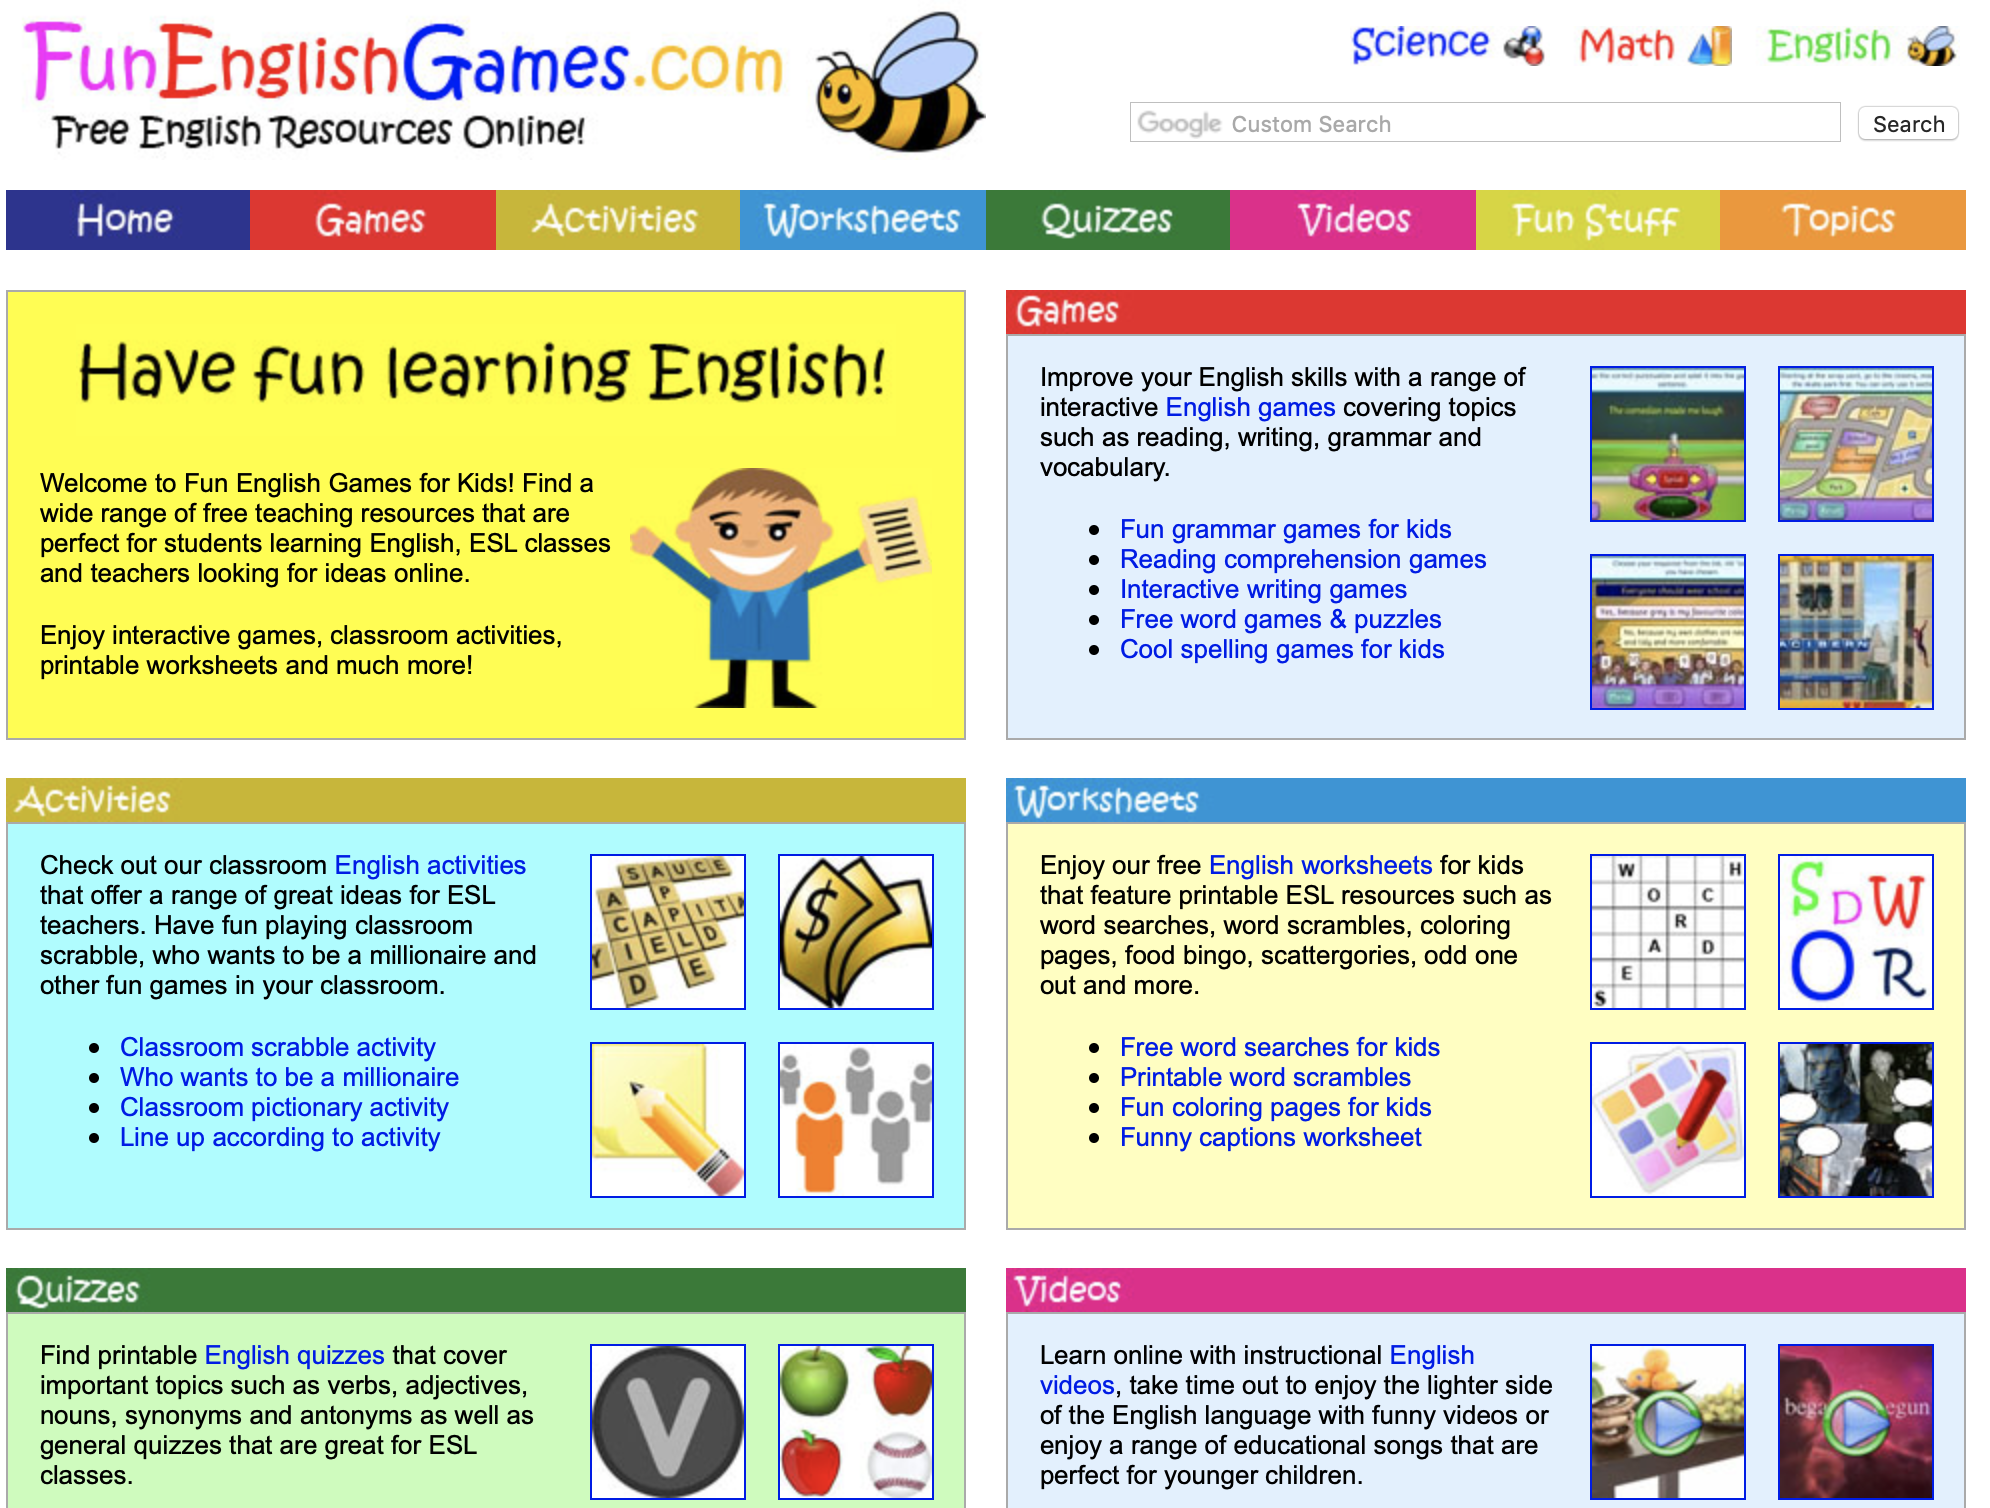 Game topics. Funny English game. Инглиш геймс. Fun English games. English games for Kids.